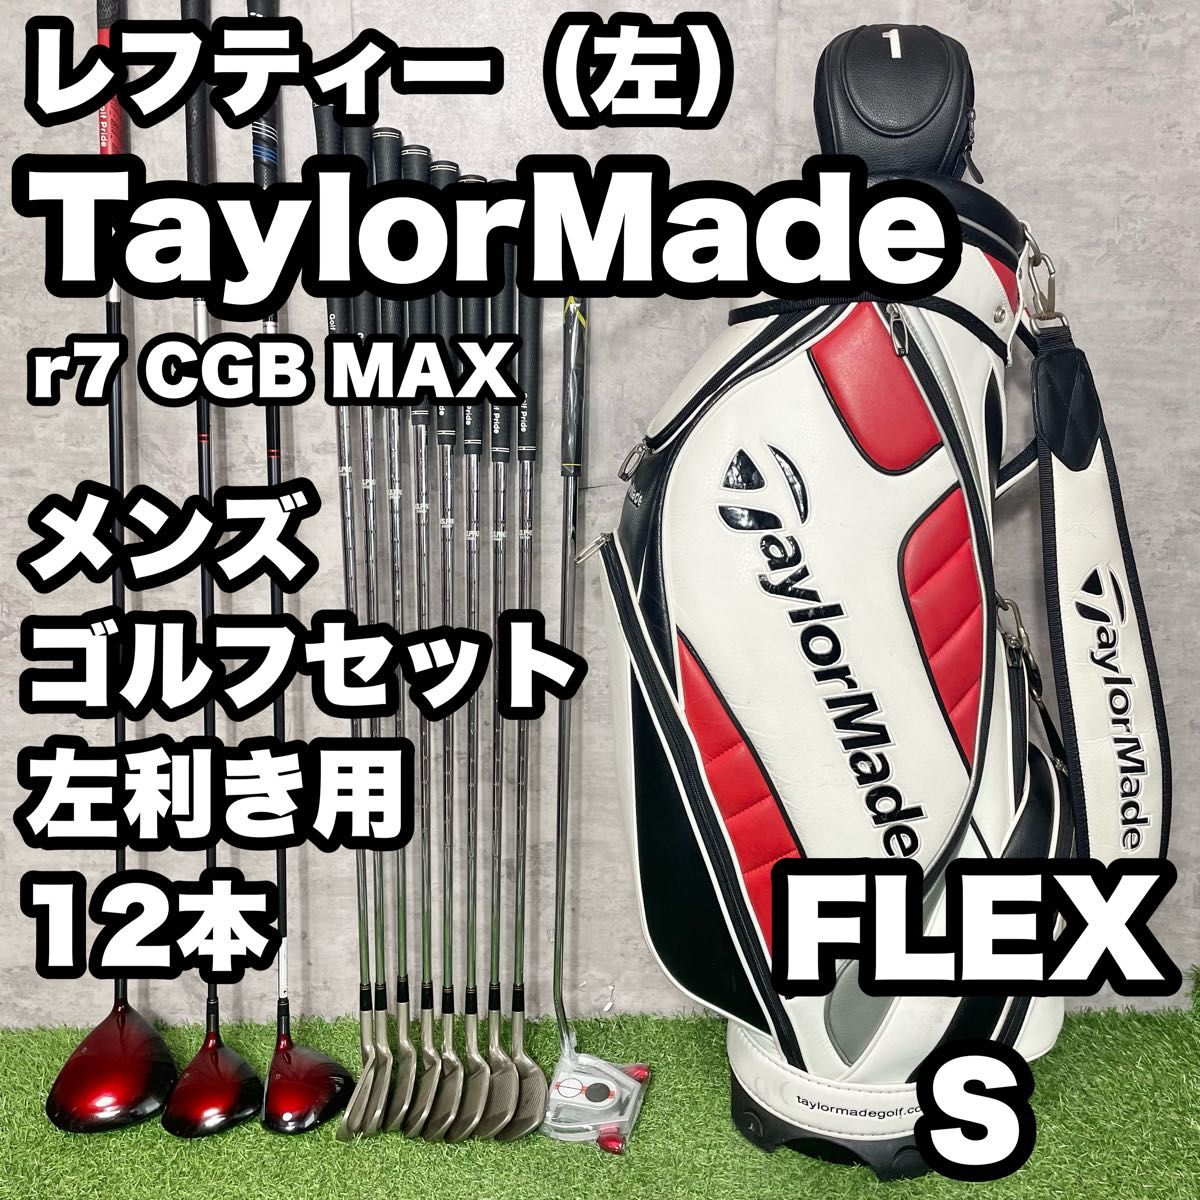 【貴重な左利き/レフティー】テーラーメイド r7 CGB  MAX ゴルフクラブ 初心者セット メンズ S 12本